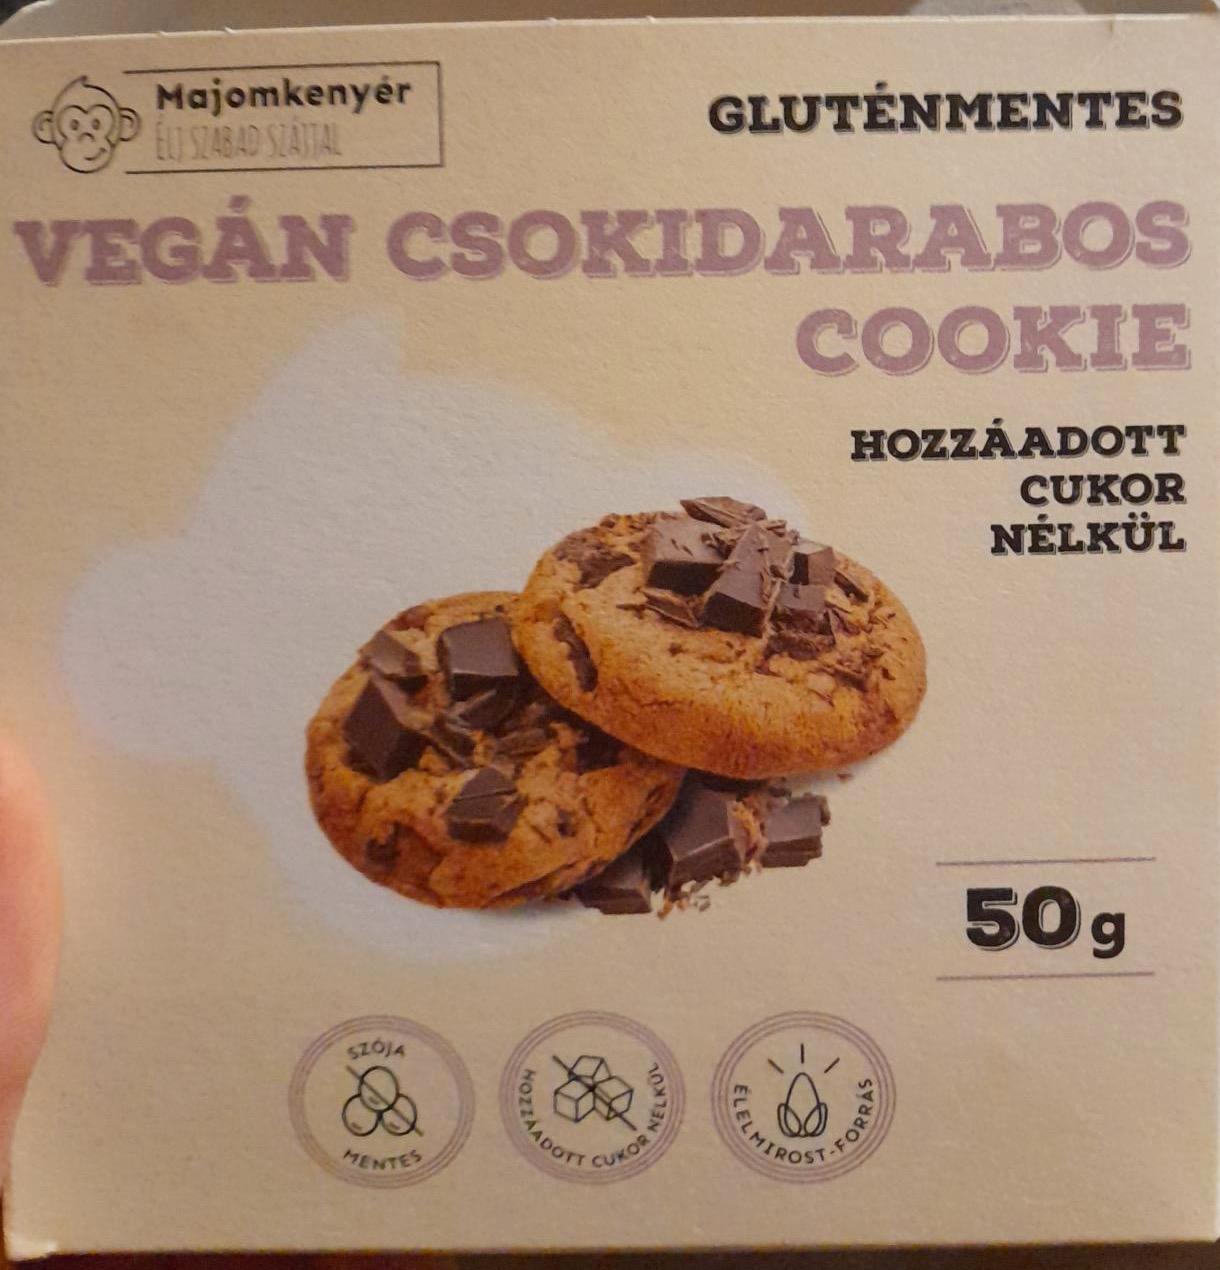 Képek - Vegán csokidarabos cookie Majomkenyér